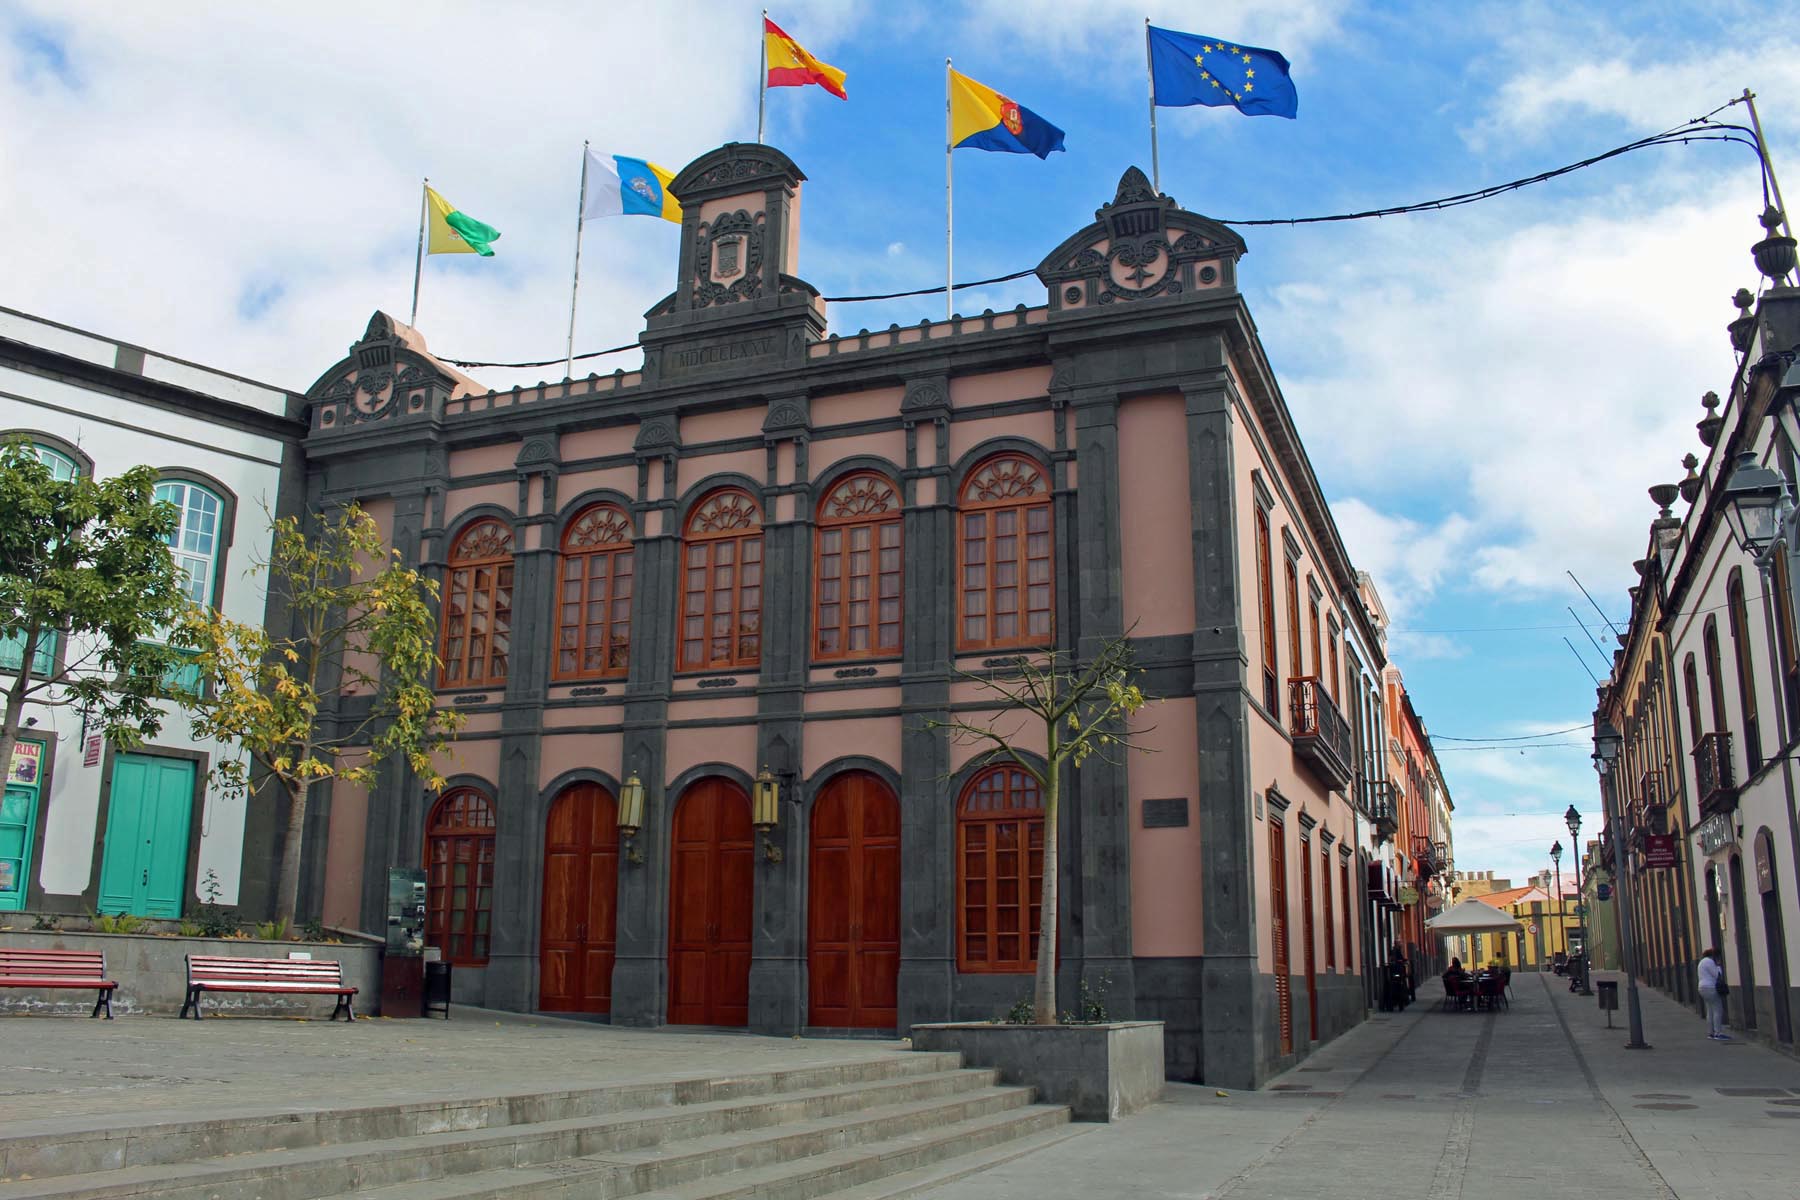 Ayuntamiento de Arucas